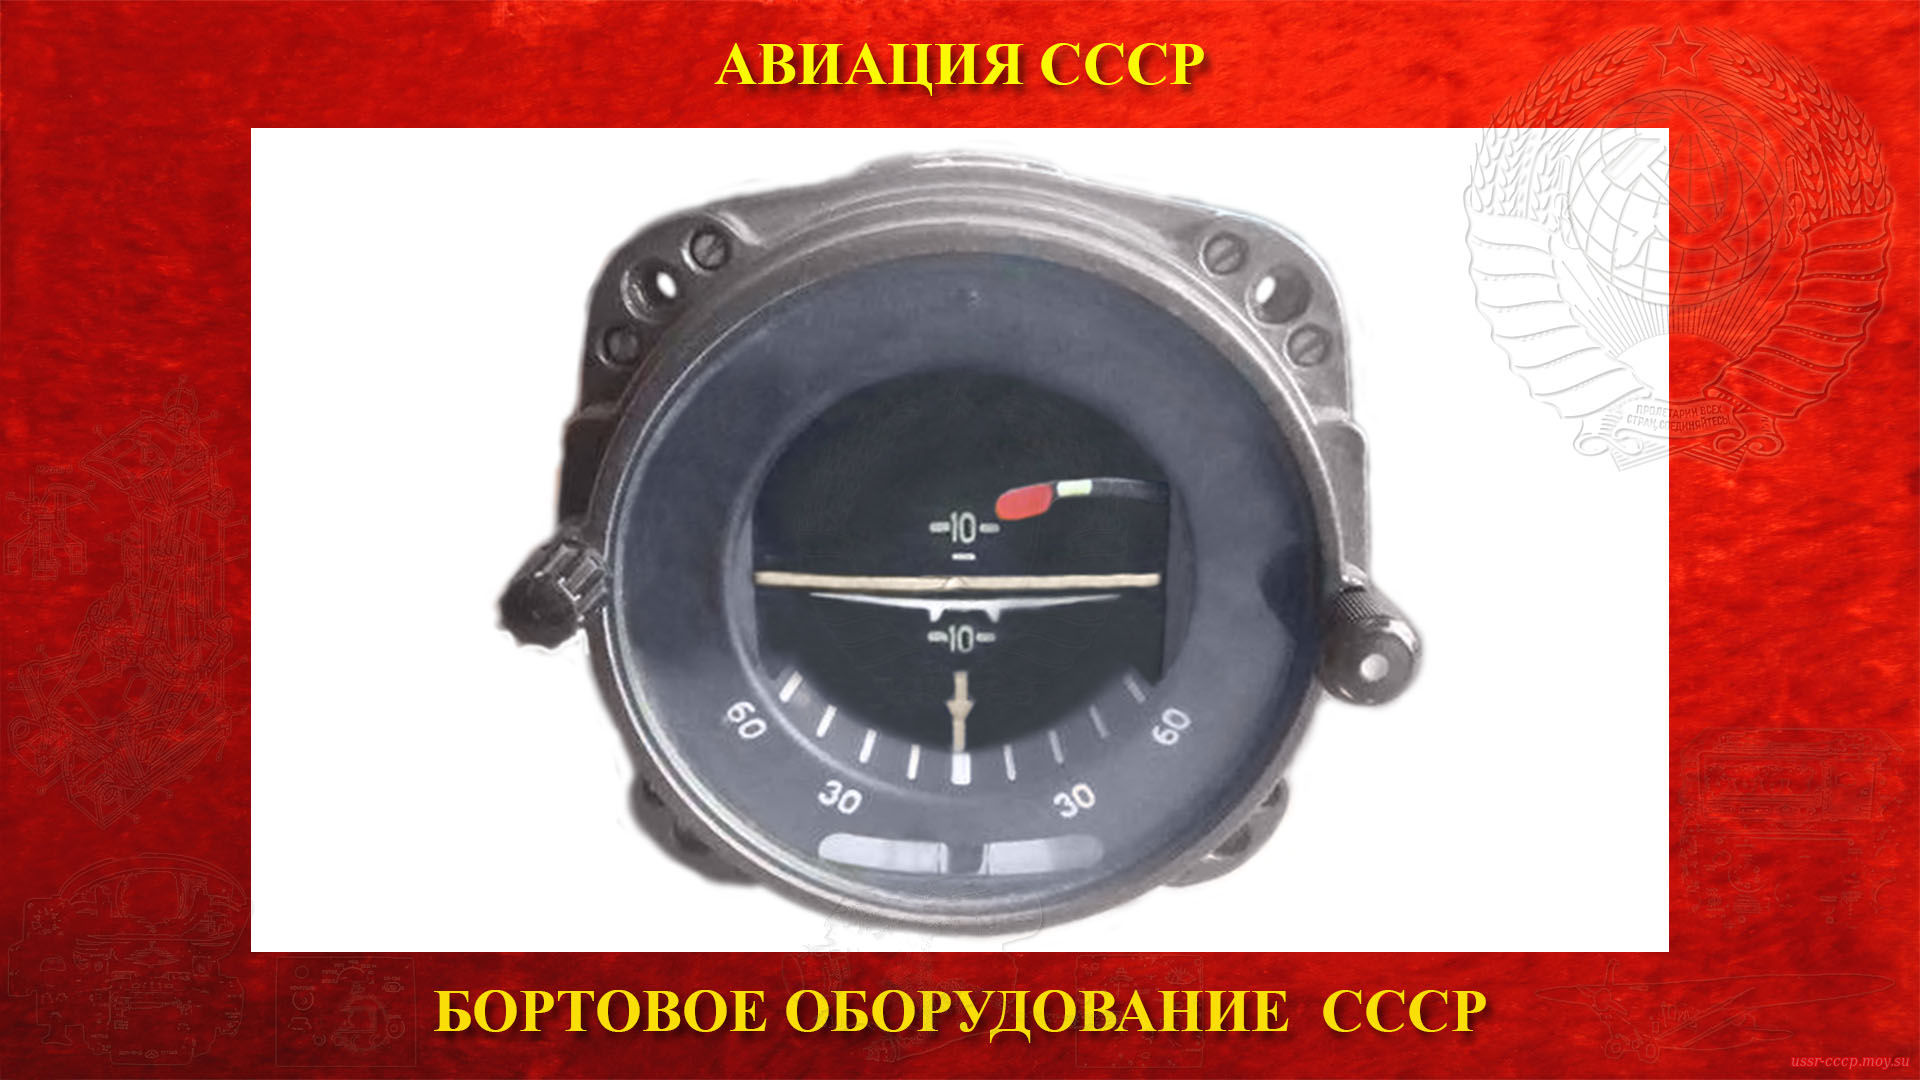 АГБ-2 — Авиагоризонт — Гироскопический прибор СССР (повествование)